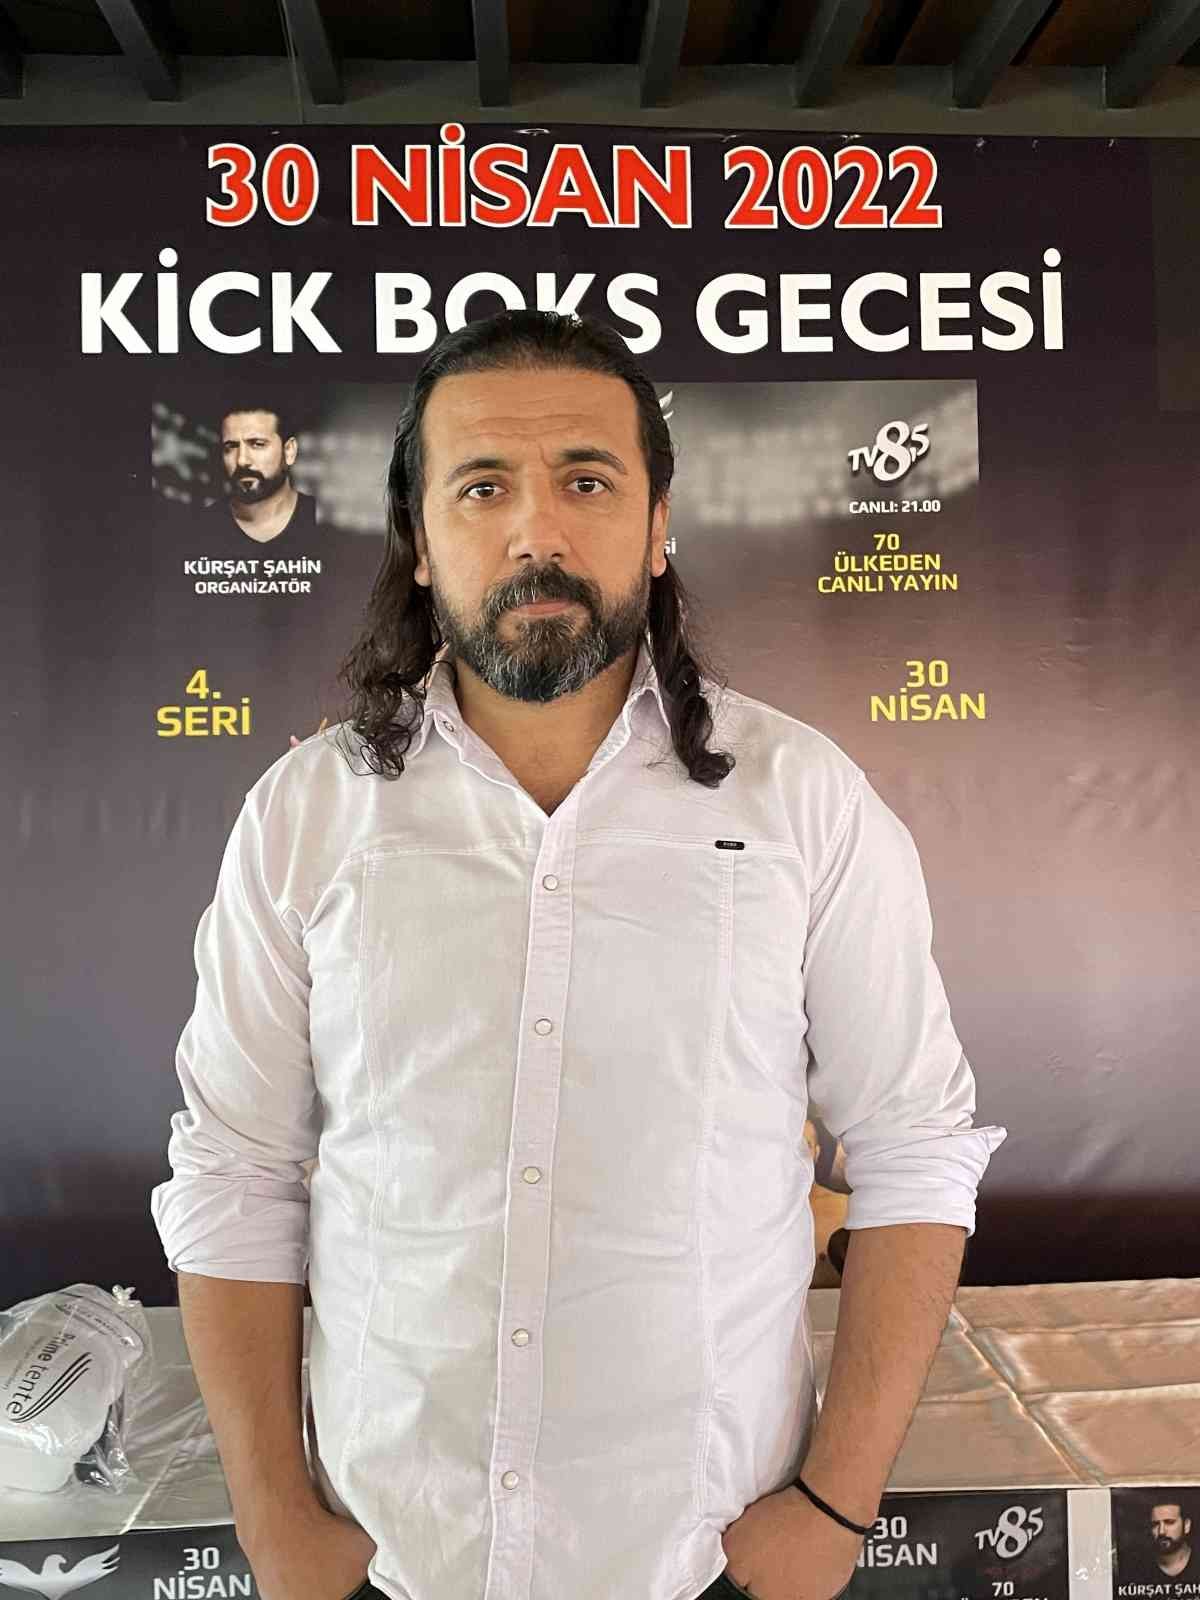 Spor organizatörü Kürşat Şahin’in organize ettiği ve 70 ülkede canlı yayınlanacak olan “Kick Boks Gecesi” düzenlenen basın toplantısıyla ...